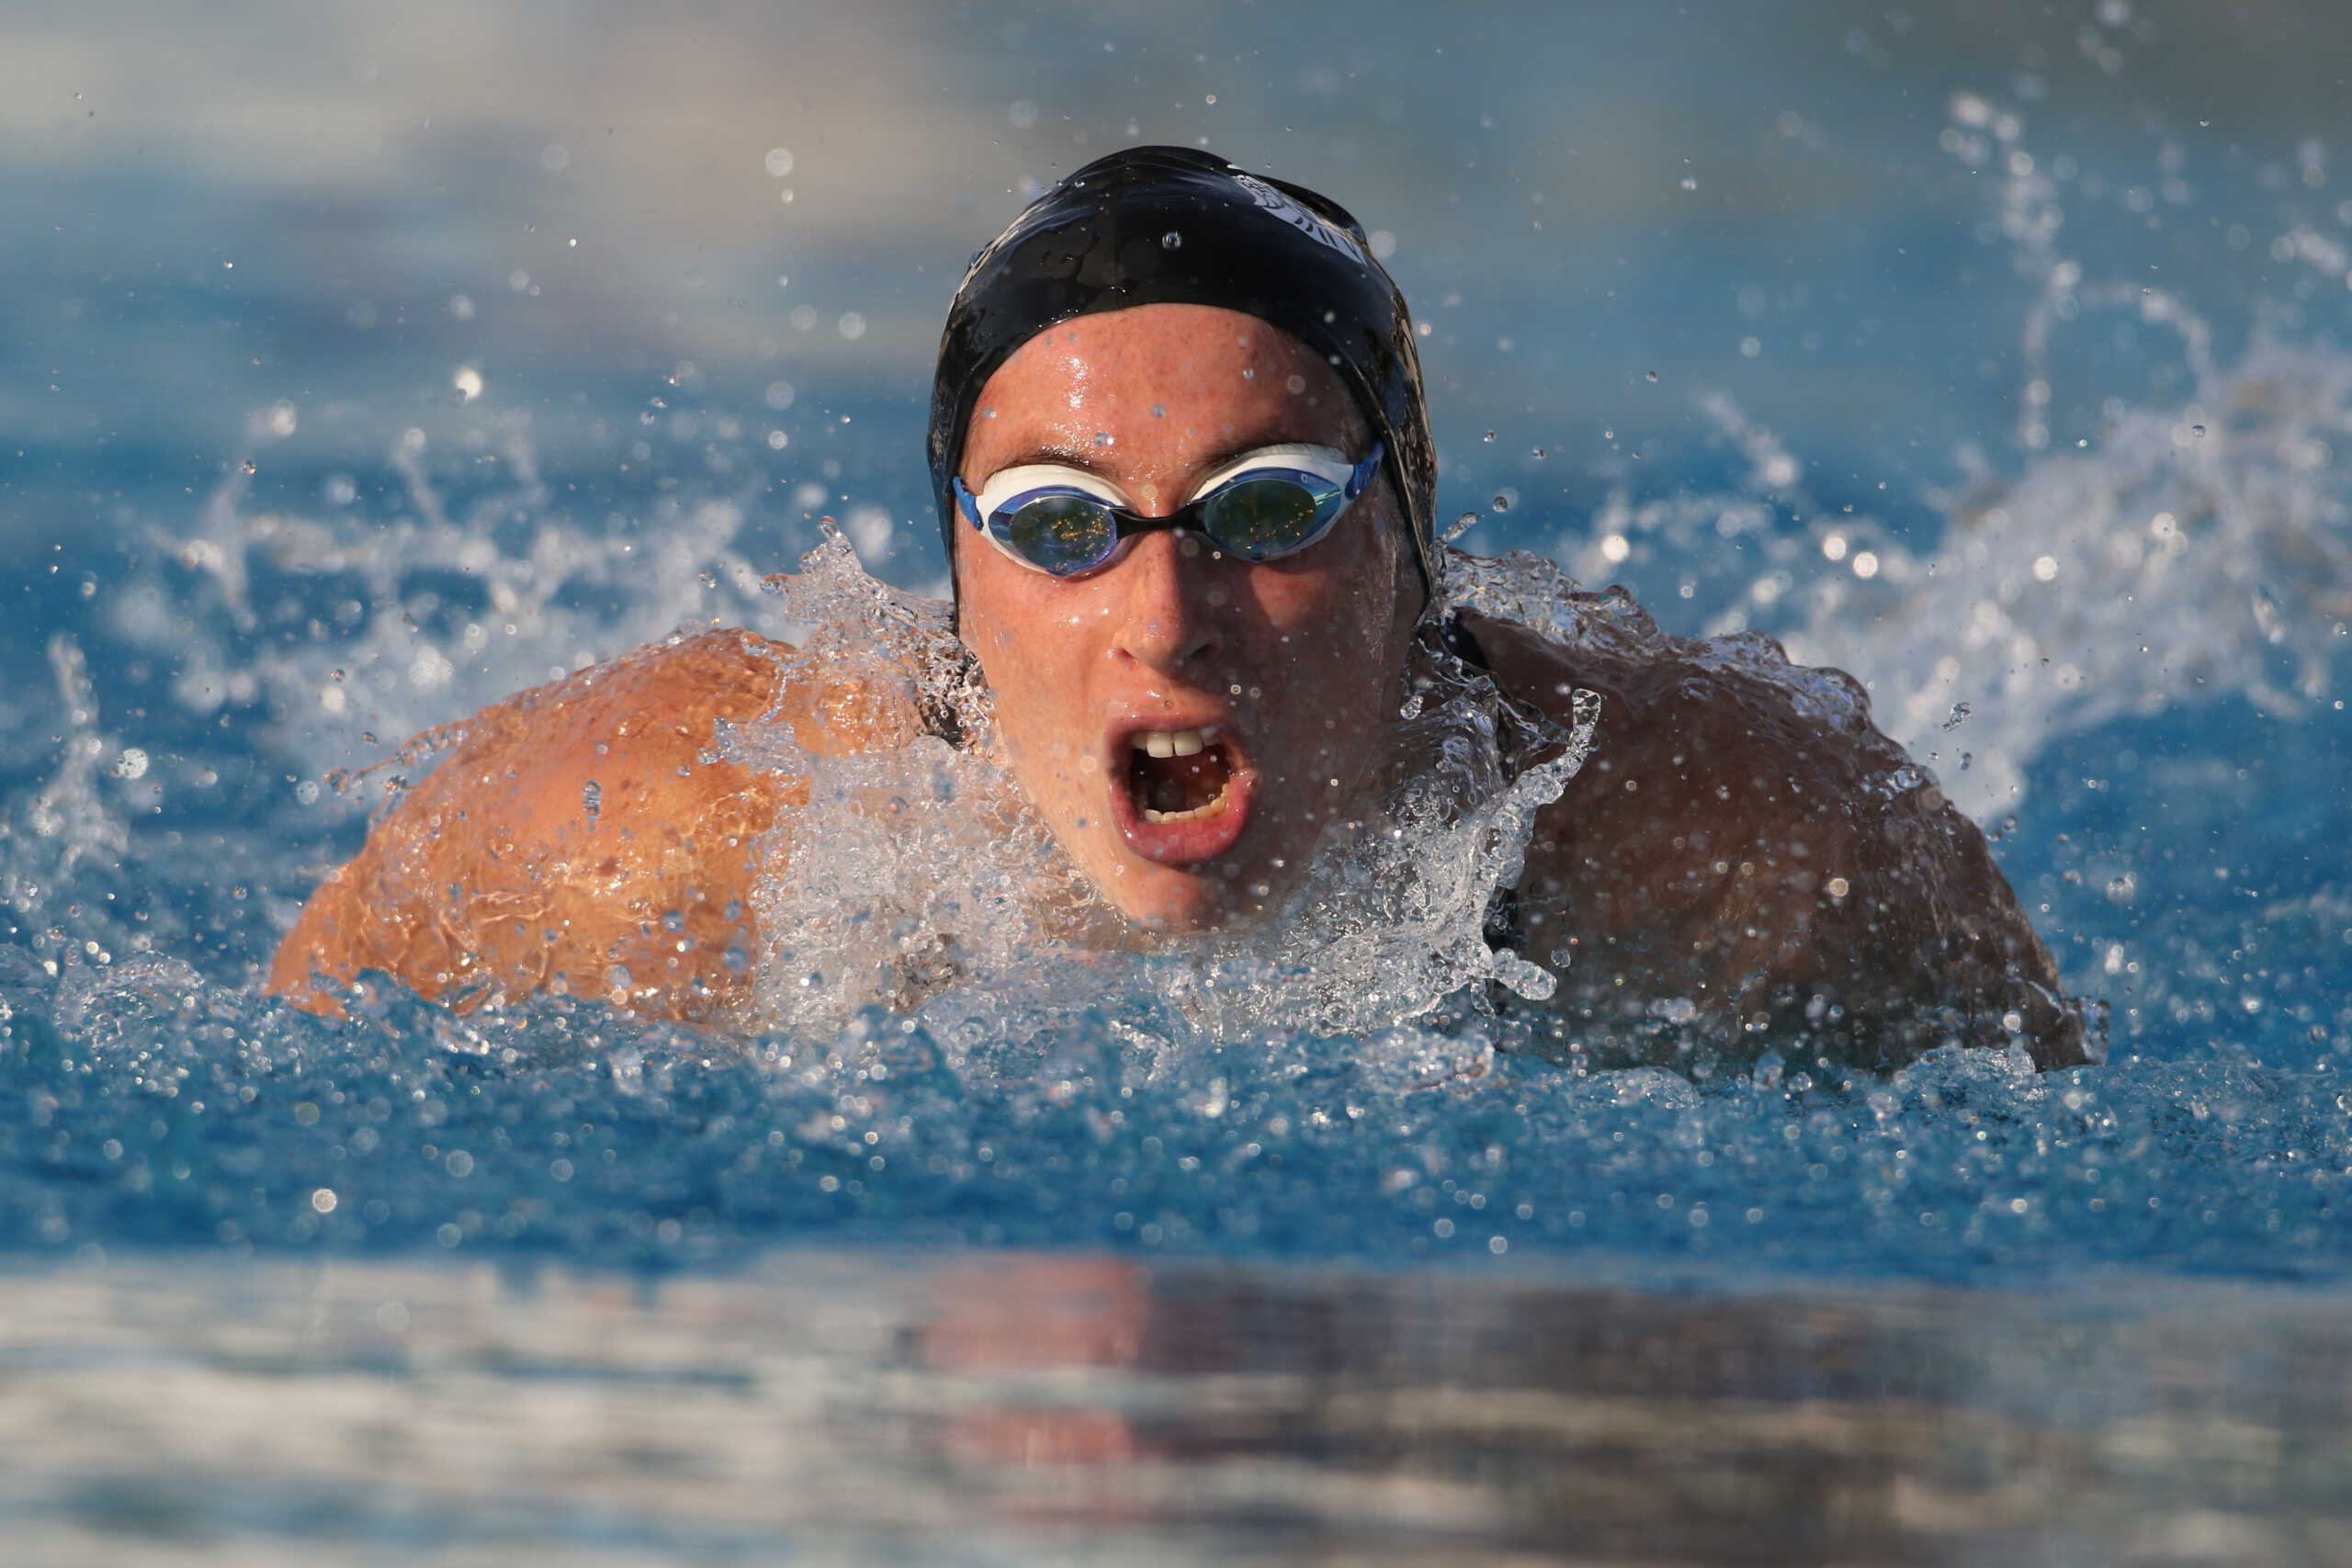 Η Άννα Ντουντουνάκη προκρίθηκε και στον τελικό των 50 μέτρων πεταλούδα στο ευρωπαϊκό πρωτάθλημα κολύμβησης